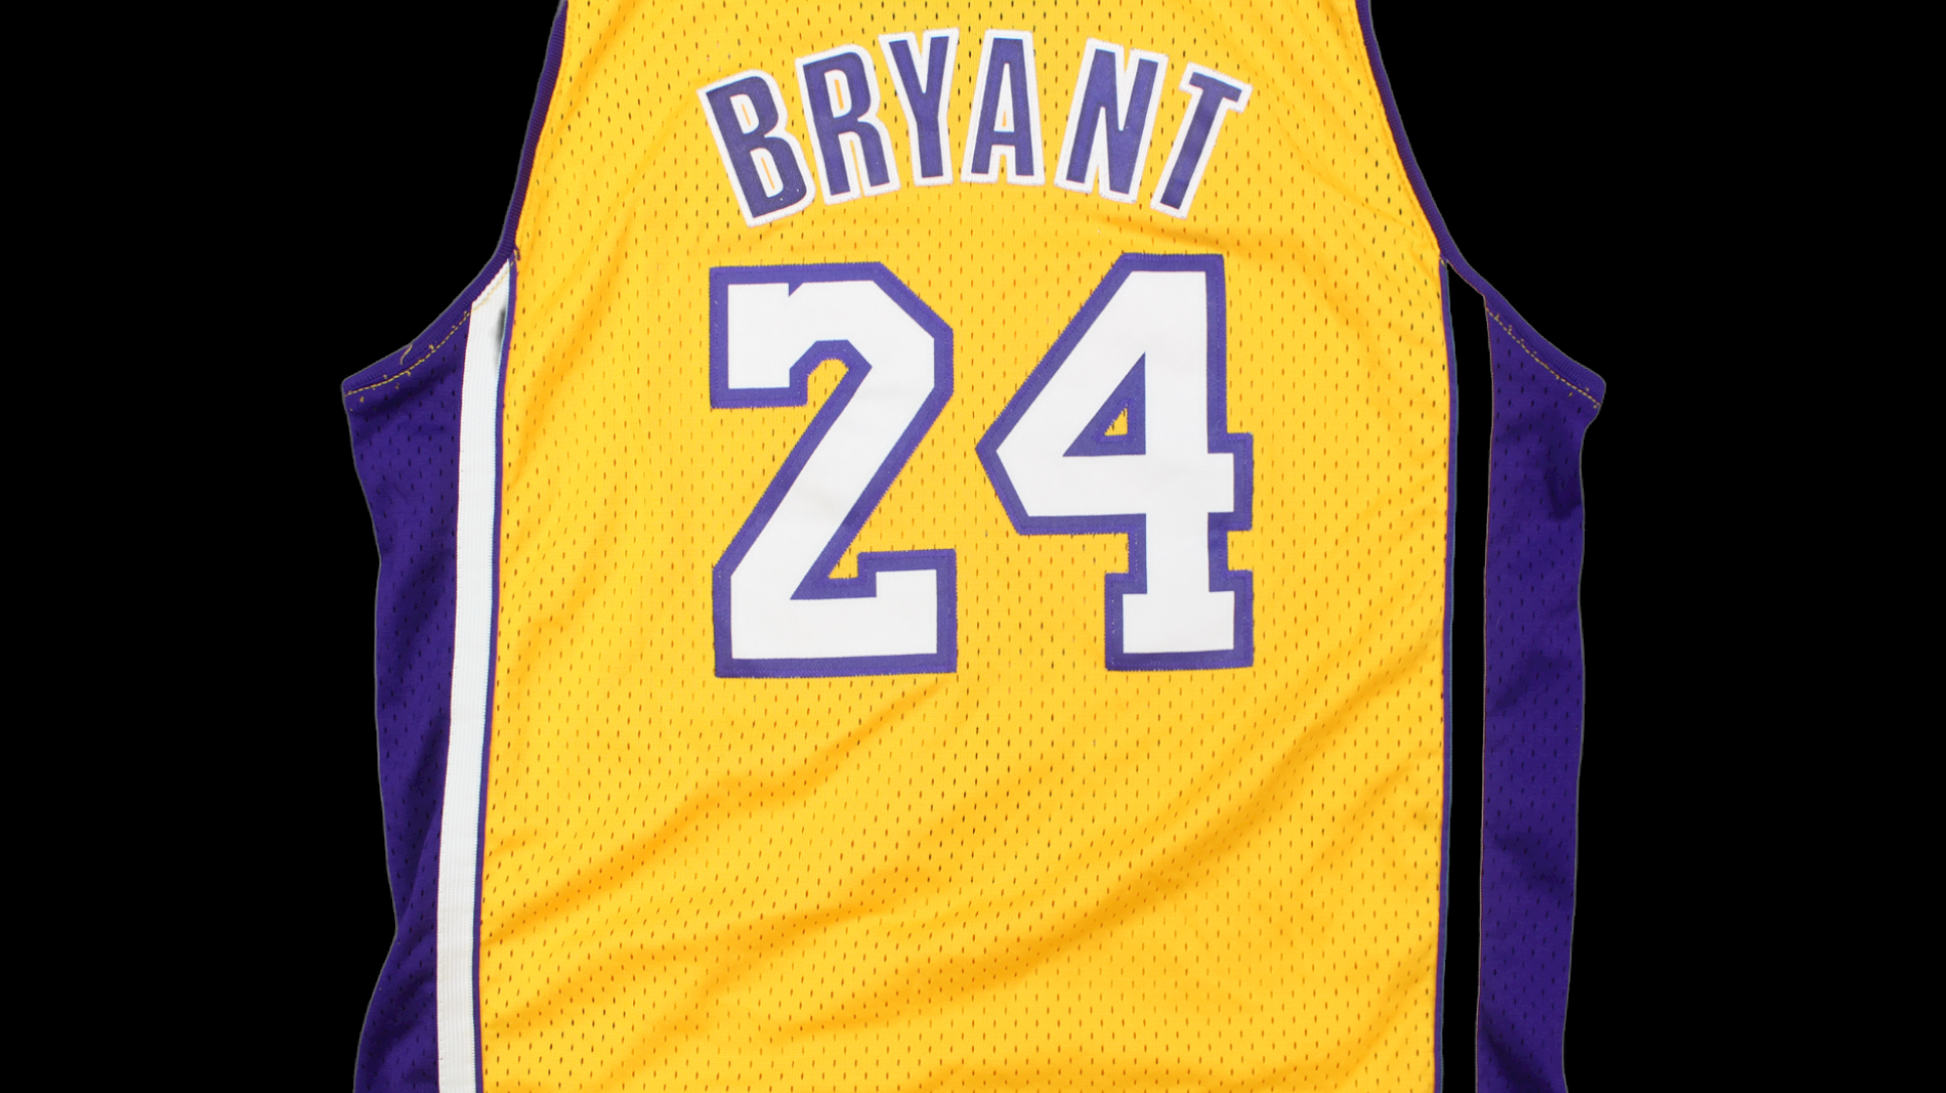 Adidas Basketball Jersey Lakers Kobe Bryant Purple Yellow